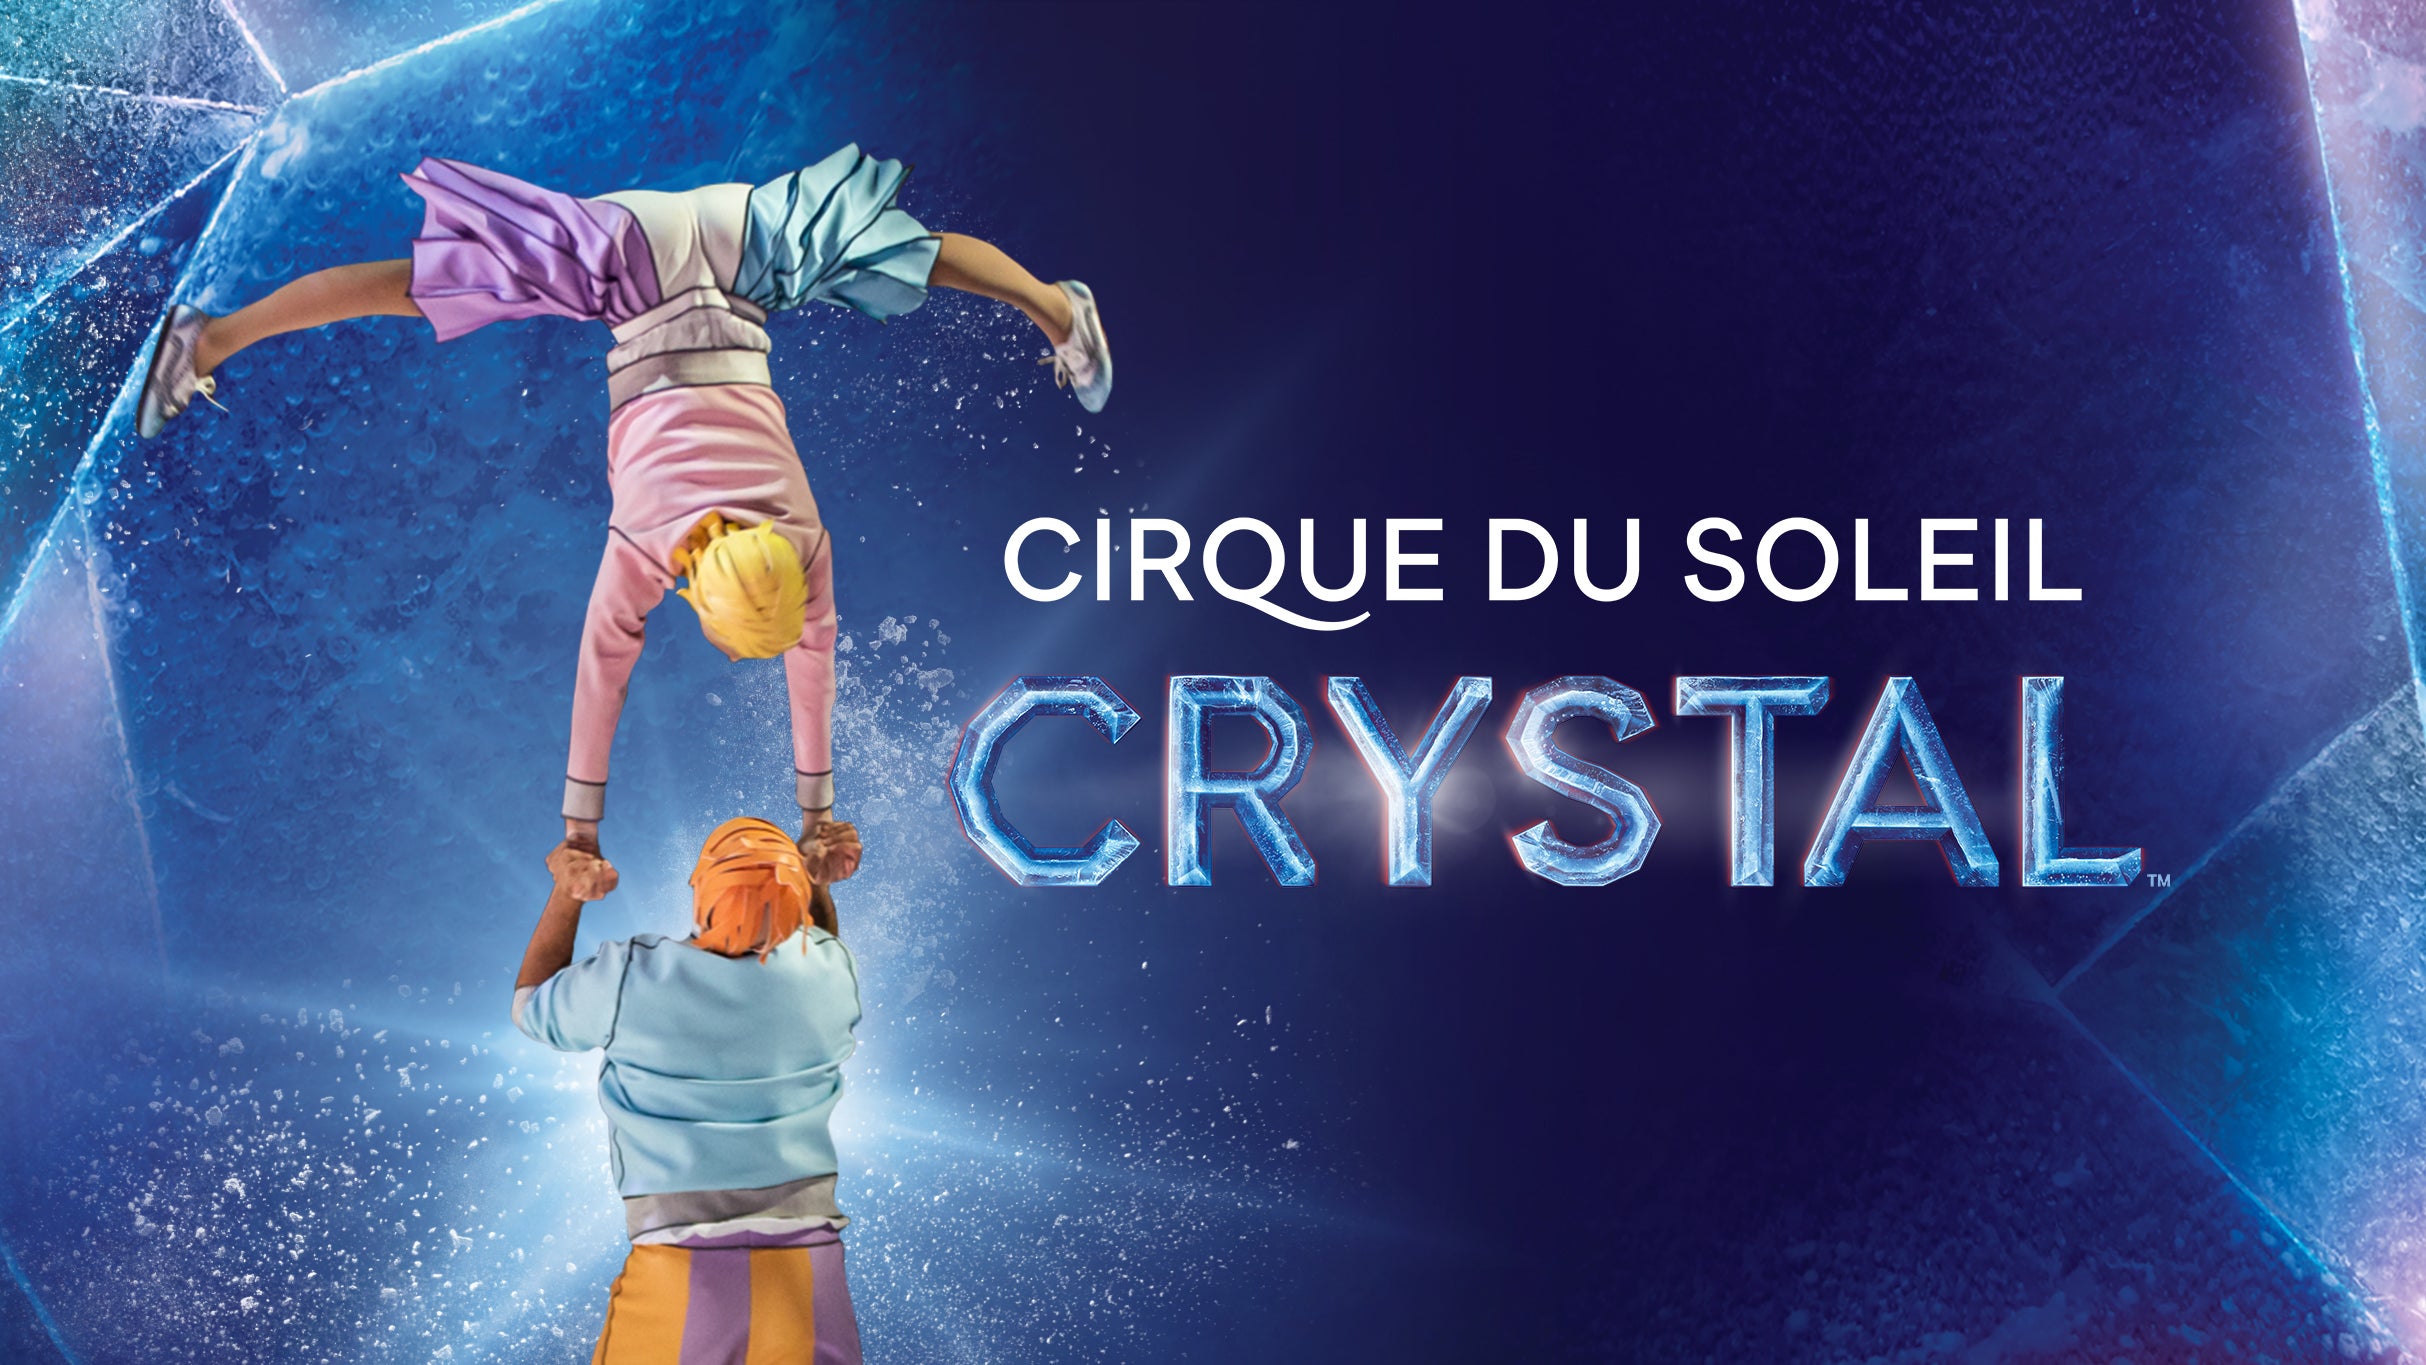 Cirque du Soleil: Crystal in Hoffman Estates promo photo for Official Platinum presale offer code